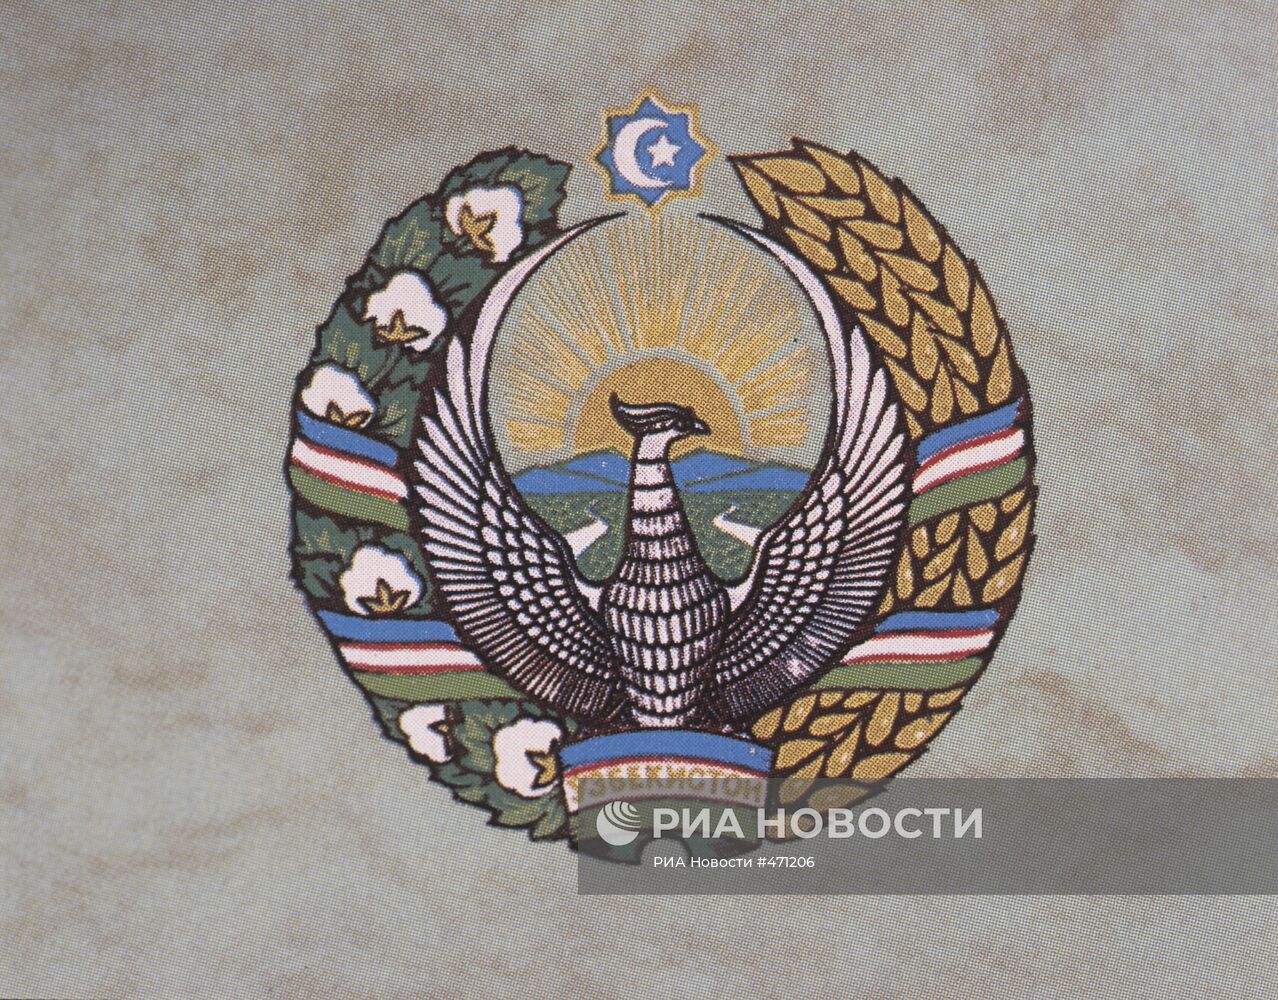 Государственный герб Республики Узбекистан